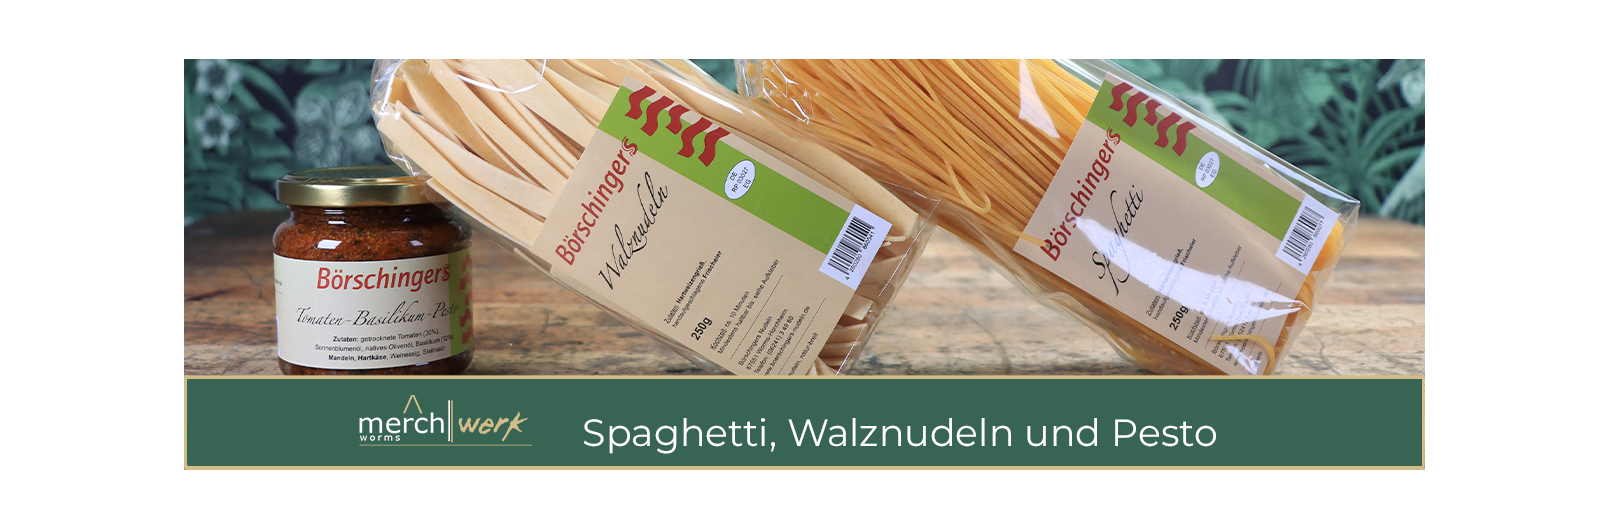 Börschingers Spaghetti, Walznudeln und Tomaten-Basilikum-Pesto